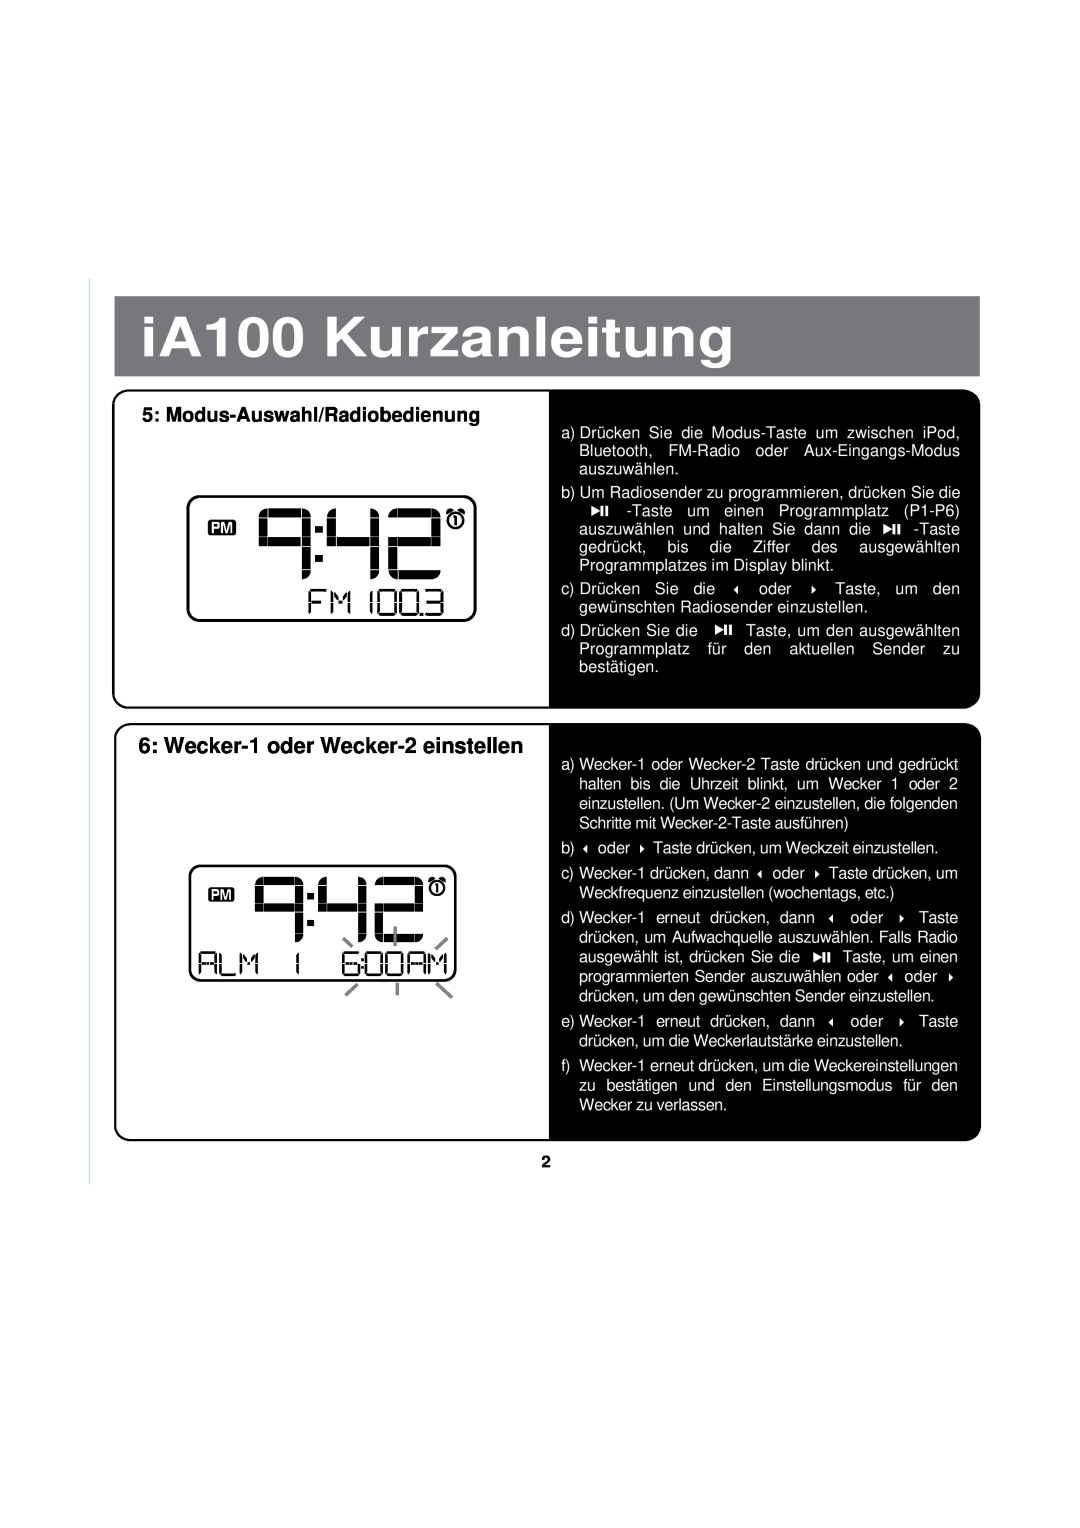 iHome manual Modus-Auswahl/Radiobedienung, iA100 Kurzanleitung, Wecker-1oder Wecker-2einstellen 